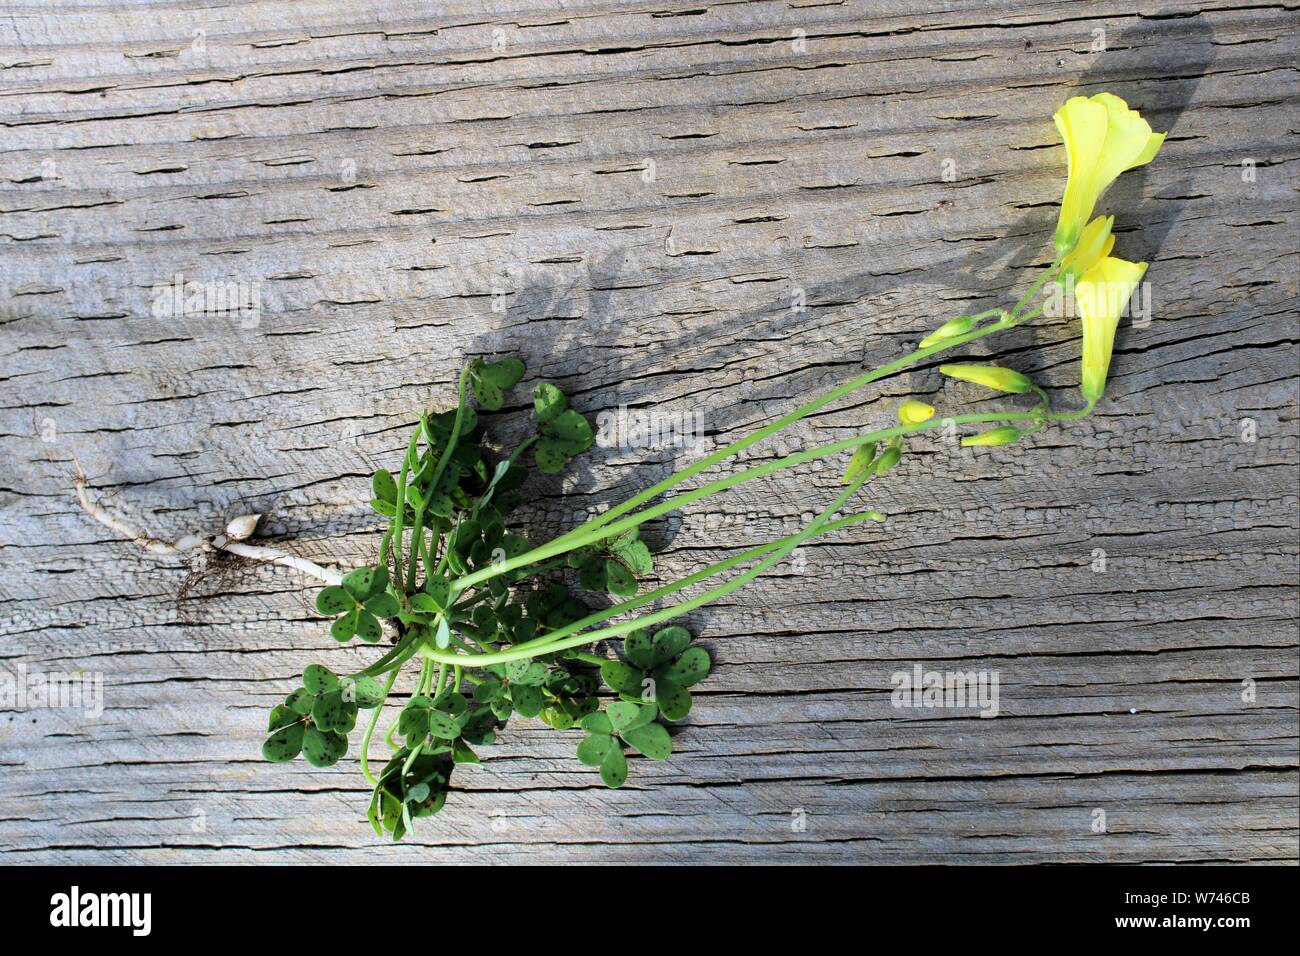 Soursop (Oxalis pes-caprae) entire plant showing parent bulbs, South Australia Stock Photo